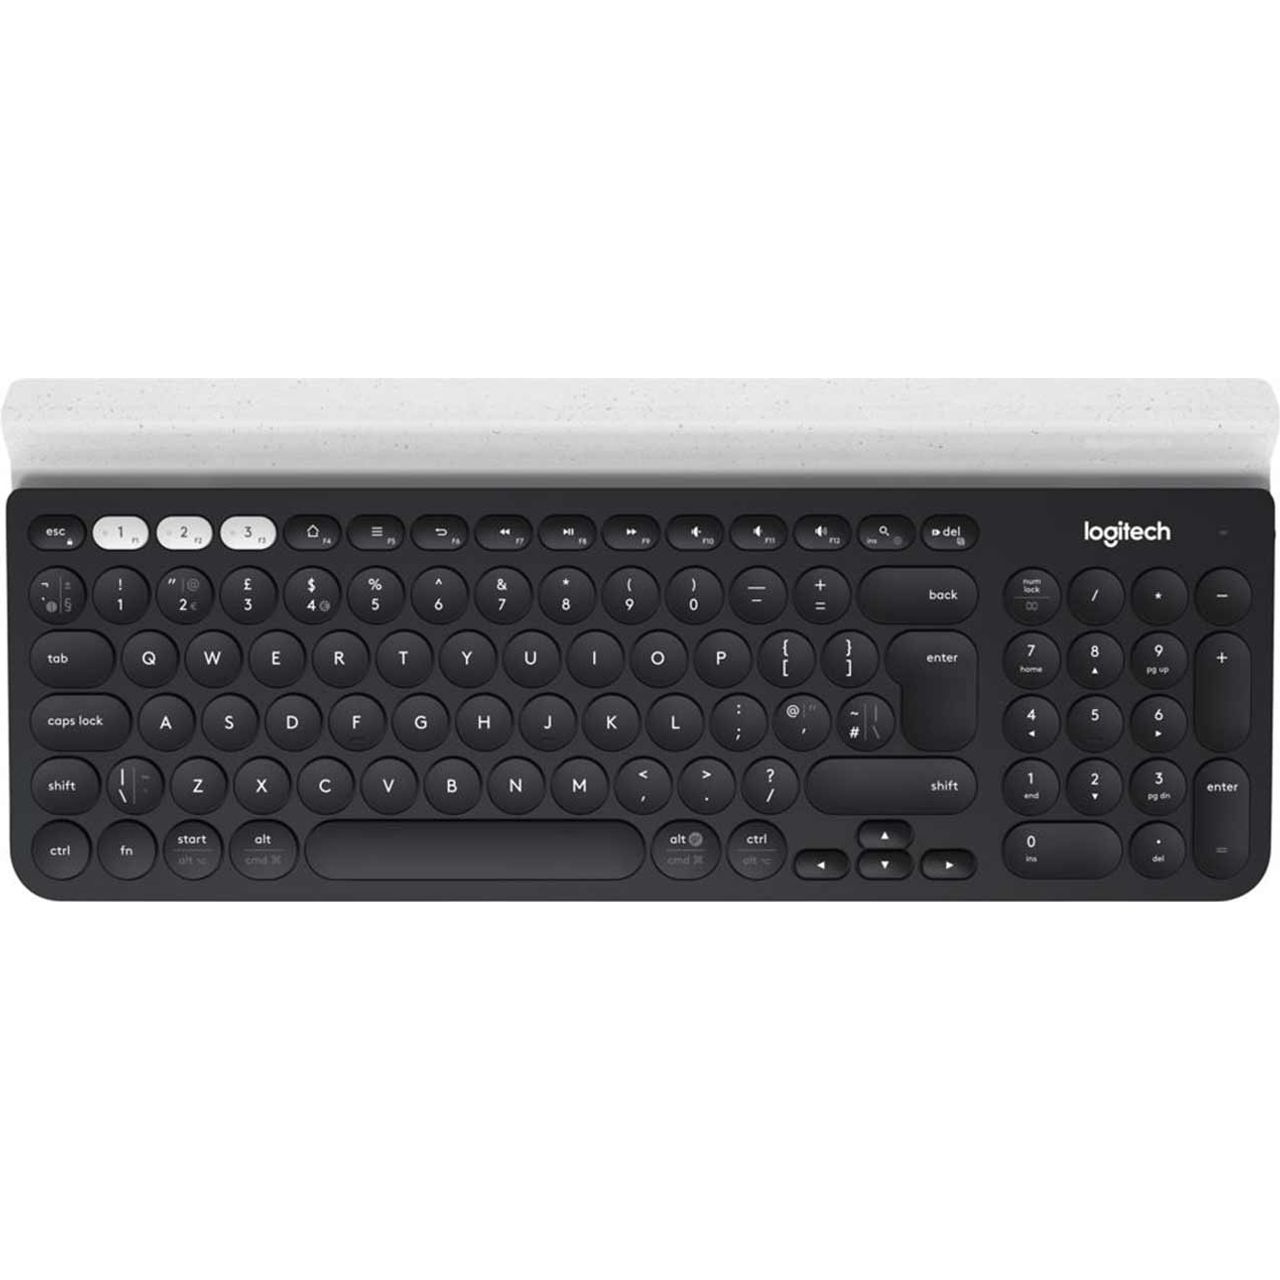 Logitech K780 Multi-Device Bluetooth Keyboard Review